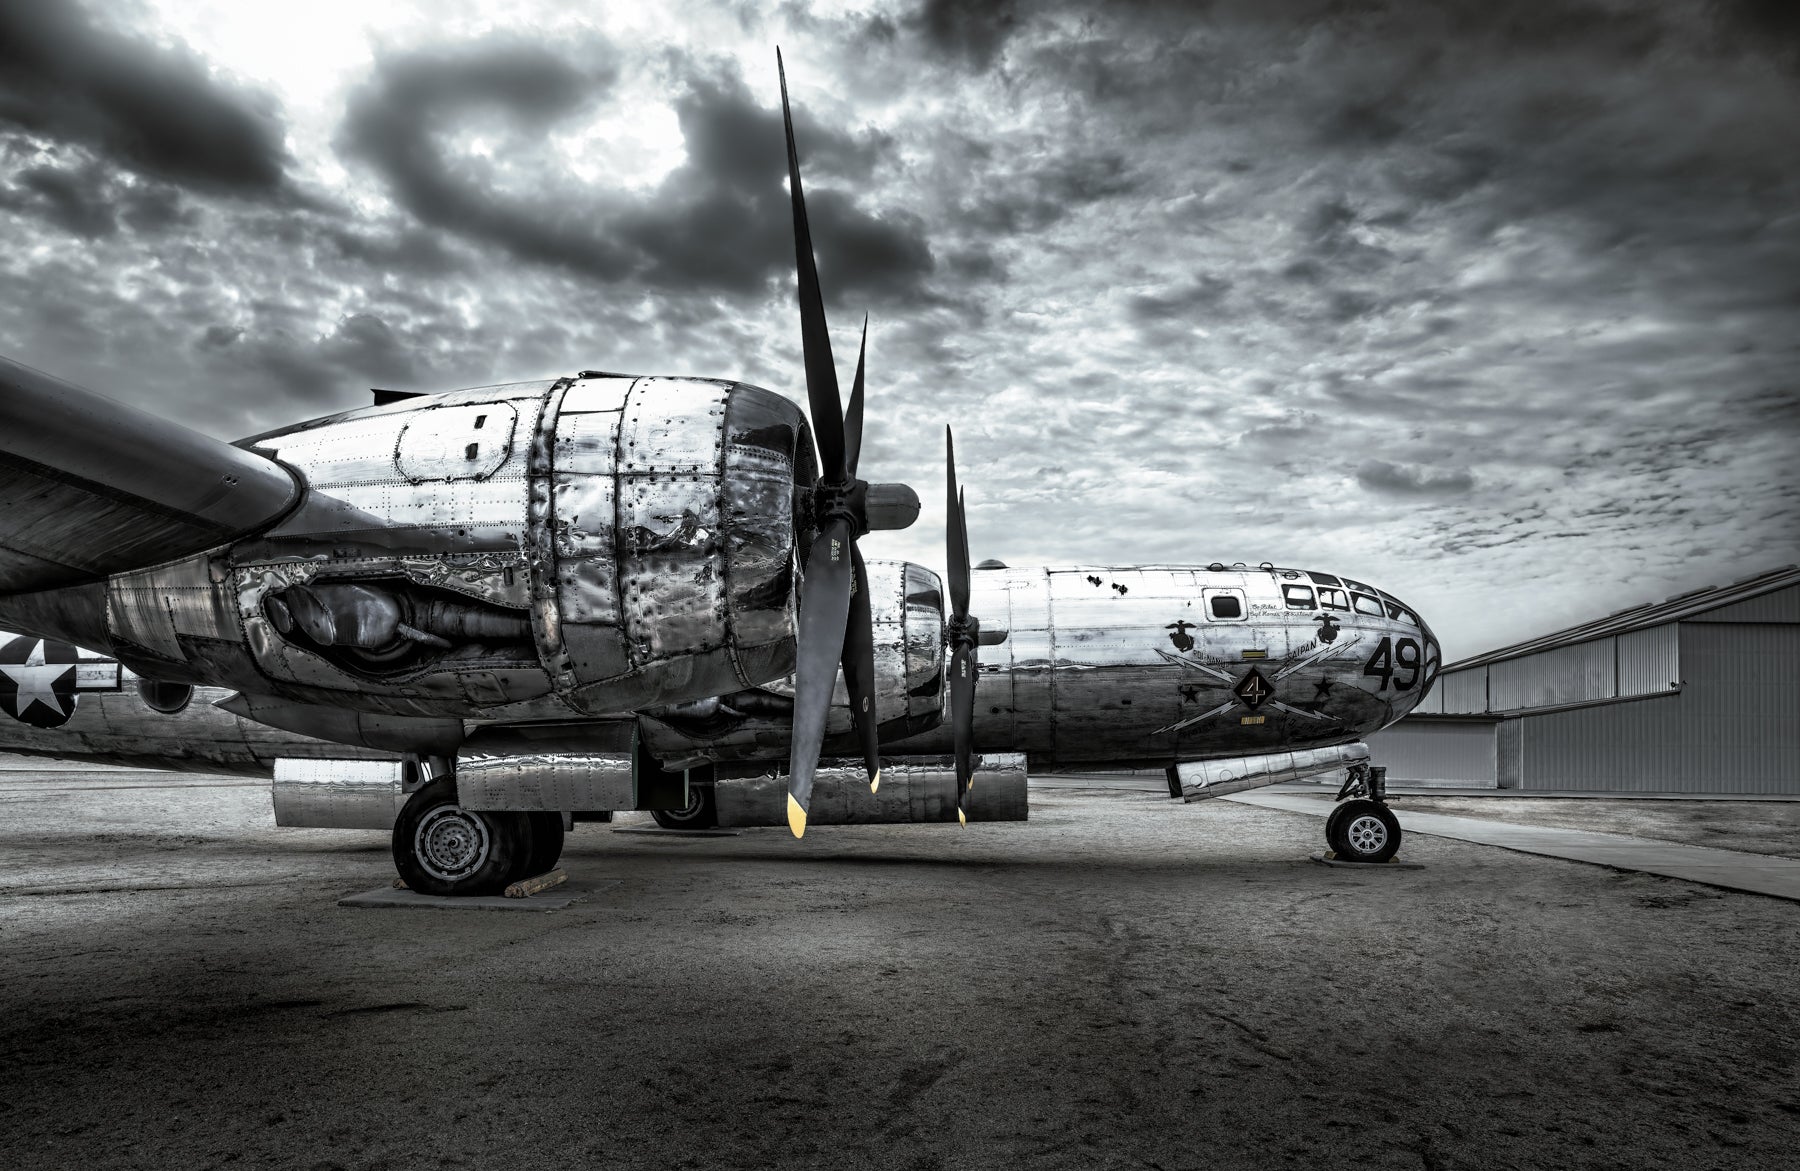 "Storied" - B-29, March Field, Riverside, CA